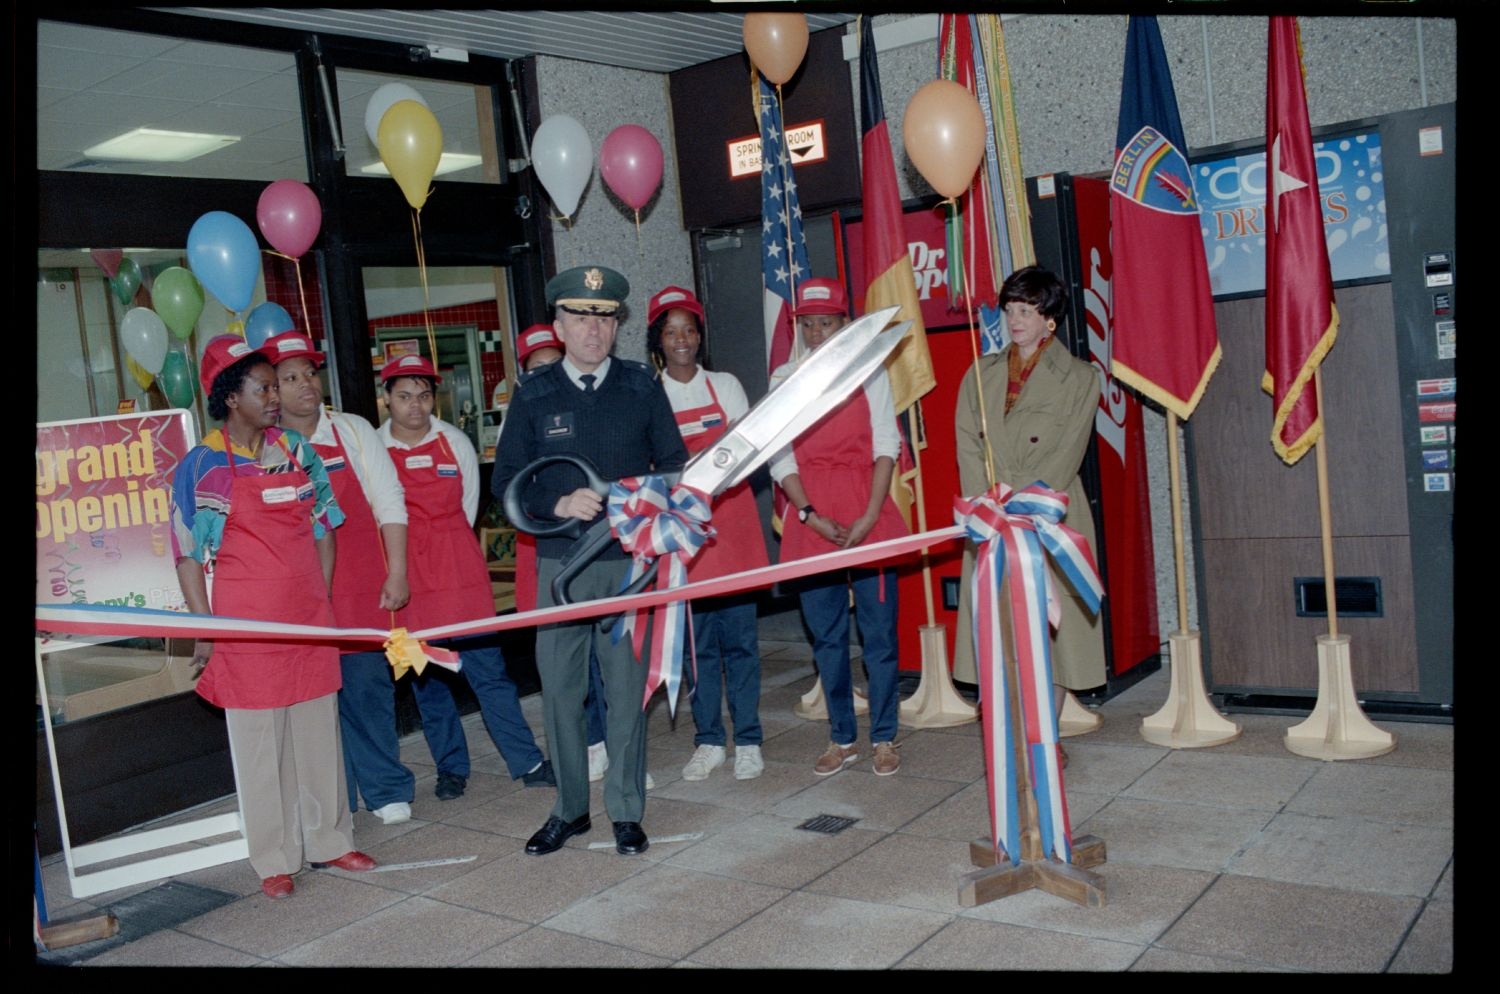 Fotografie: Eröffnung einer Anthony`s Pizza Filiale an der Truman Plaza in Berlin-Dahlem